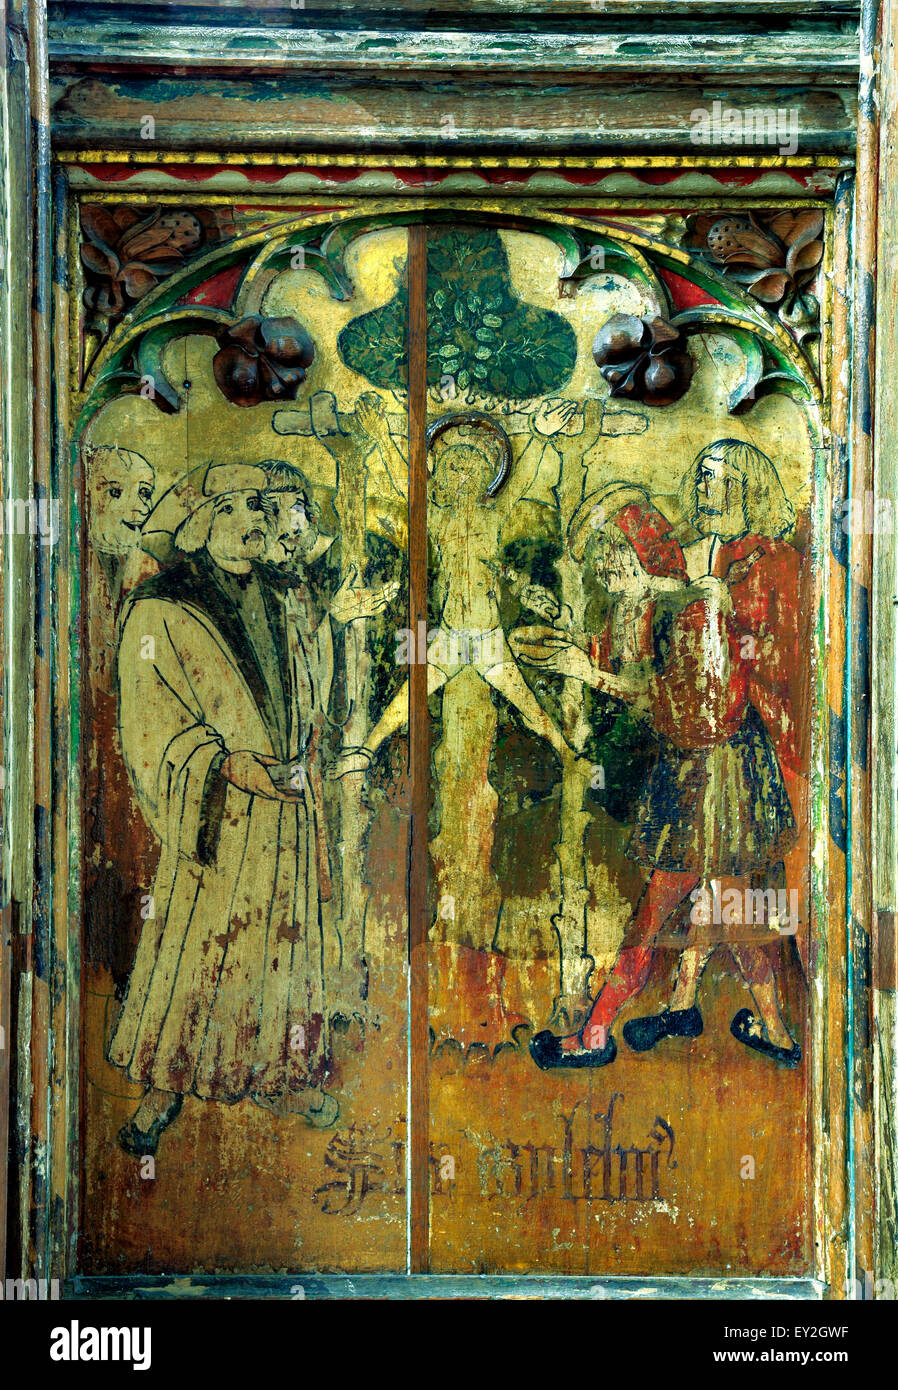 St. William von Norwich, mittelalterliche Malerei Loddon, Norfolk, England UK Gemälde mittelalterlichen Heiligen Heiligen Lettner Stockfoto